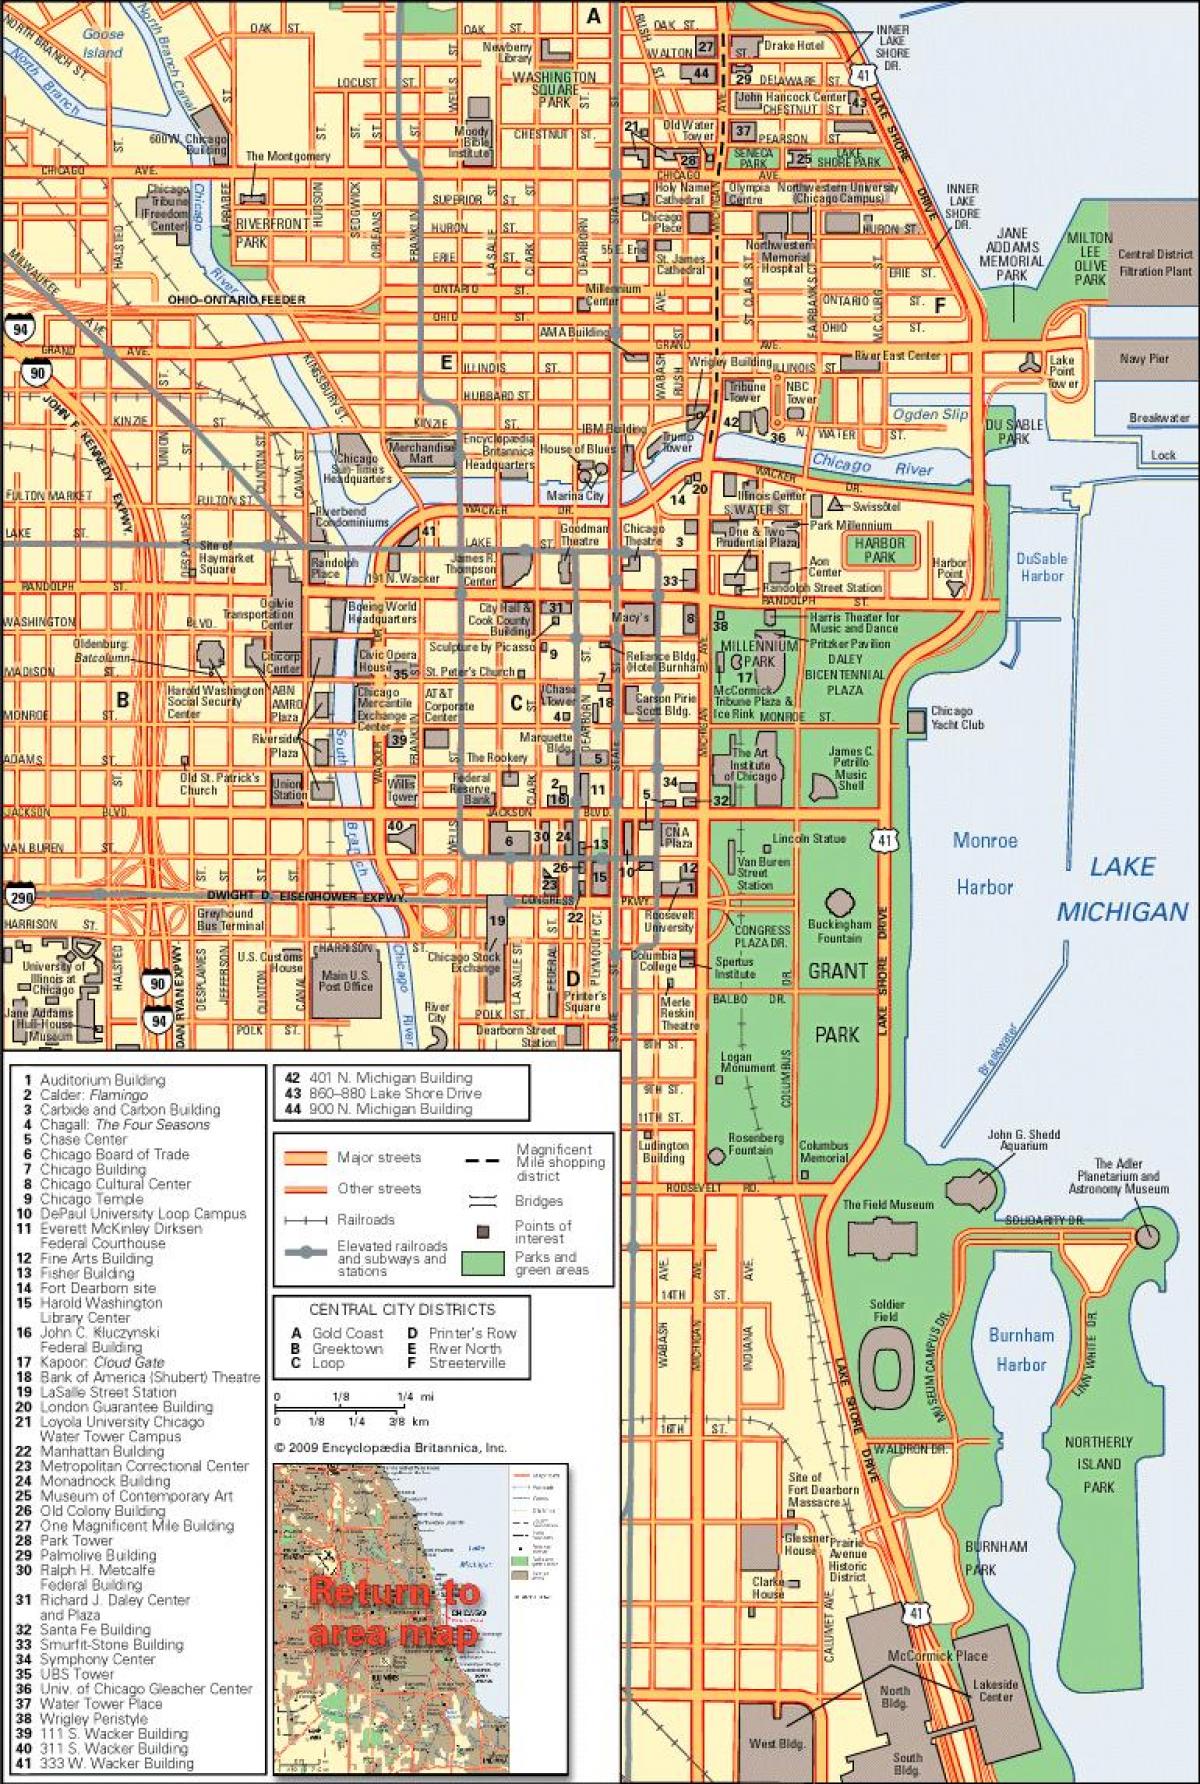 शिकागो शहर के नक्शे